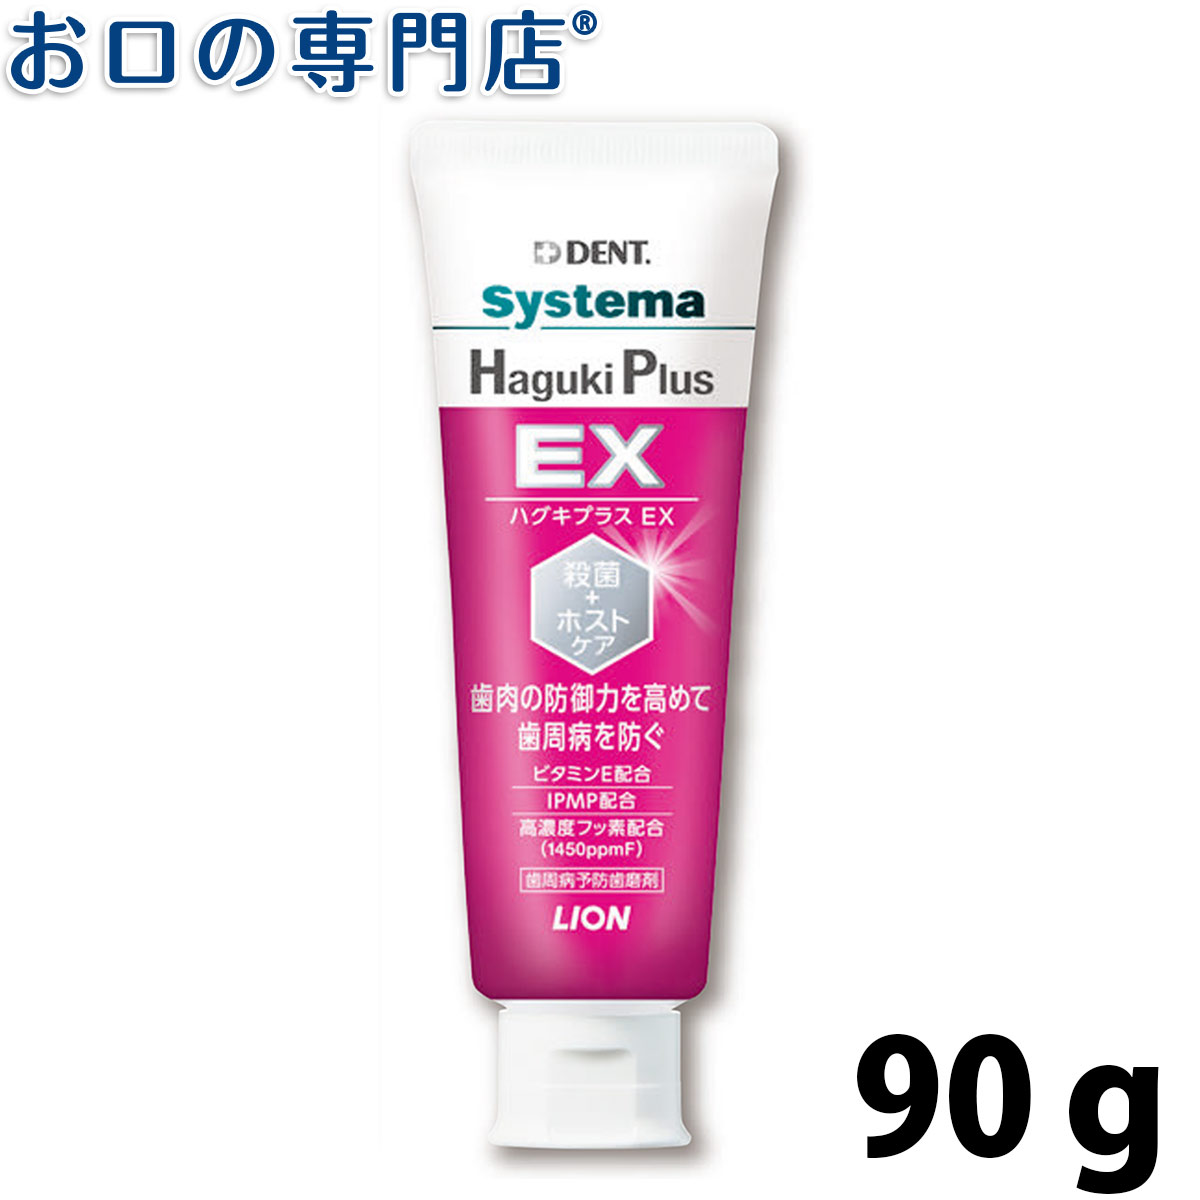 ライオン デント システマ ハグキプラスEX Haguki Plus EX 90g 1本 歯科専売品